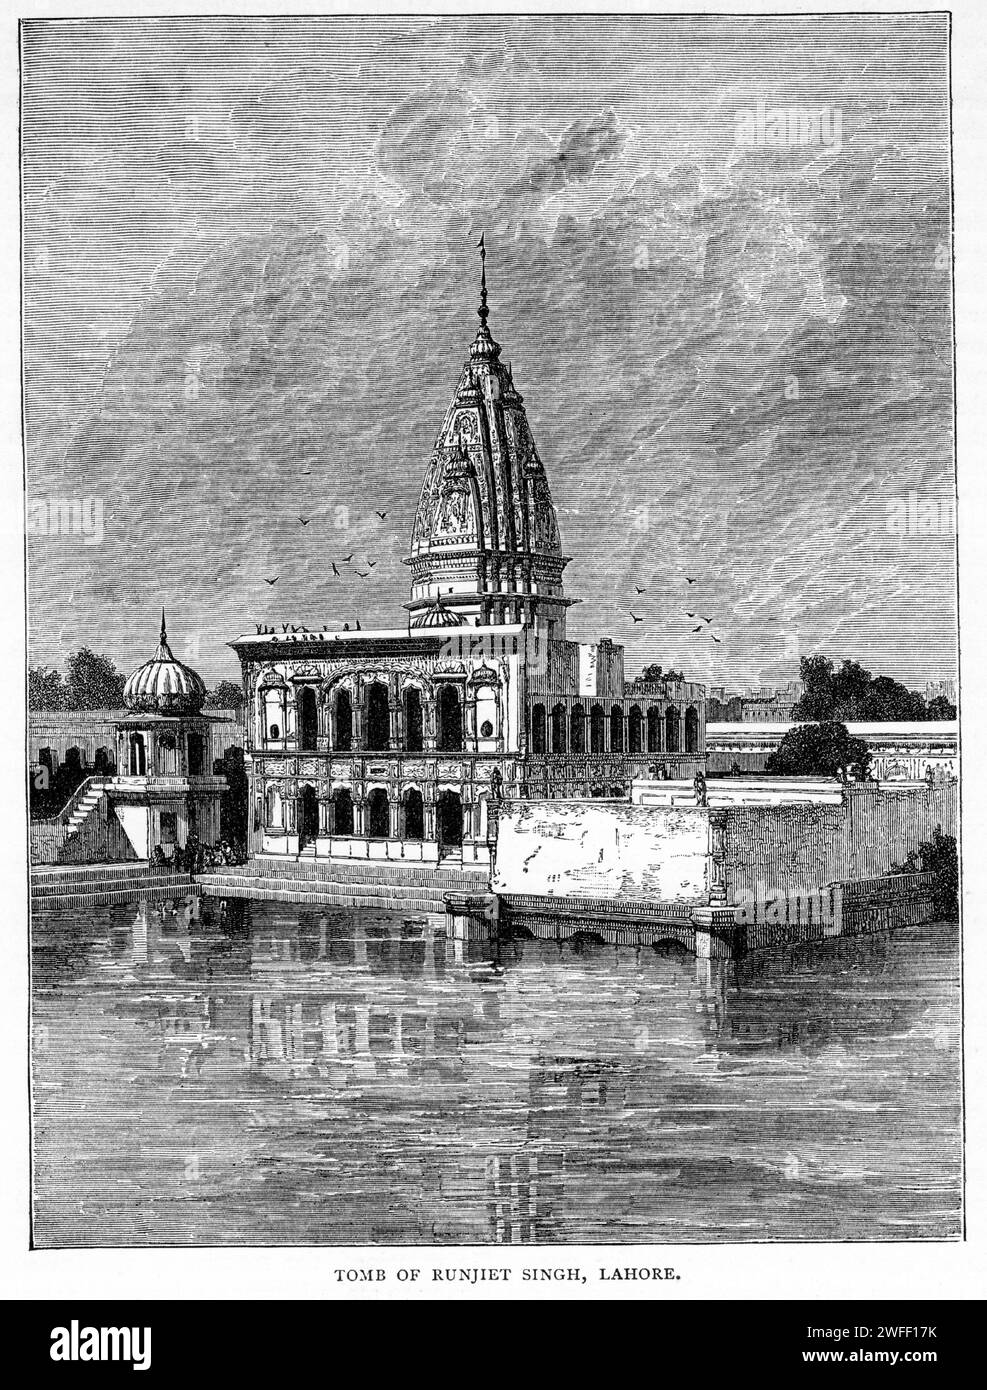 Gravure du Samadhi de Ranjit Singh, un bâtiment du 19e siècle à Lahore au Pakistan qui abrite les urnes funéraires du maharaja Sikh Ranjit Singh (1780 – 1839). Il est situé à côté du fort de Lahore et de la mosquée Badshahi, ainsi que du Gurdwara Dera Sahib, publié vers 1900 Banque D'Images